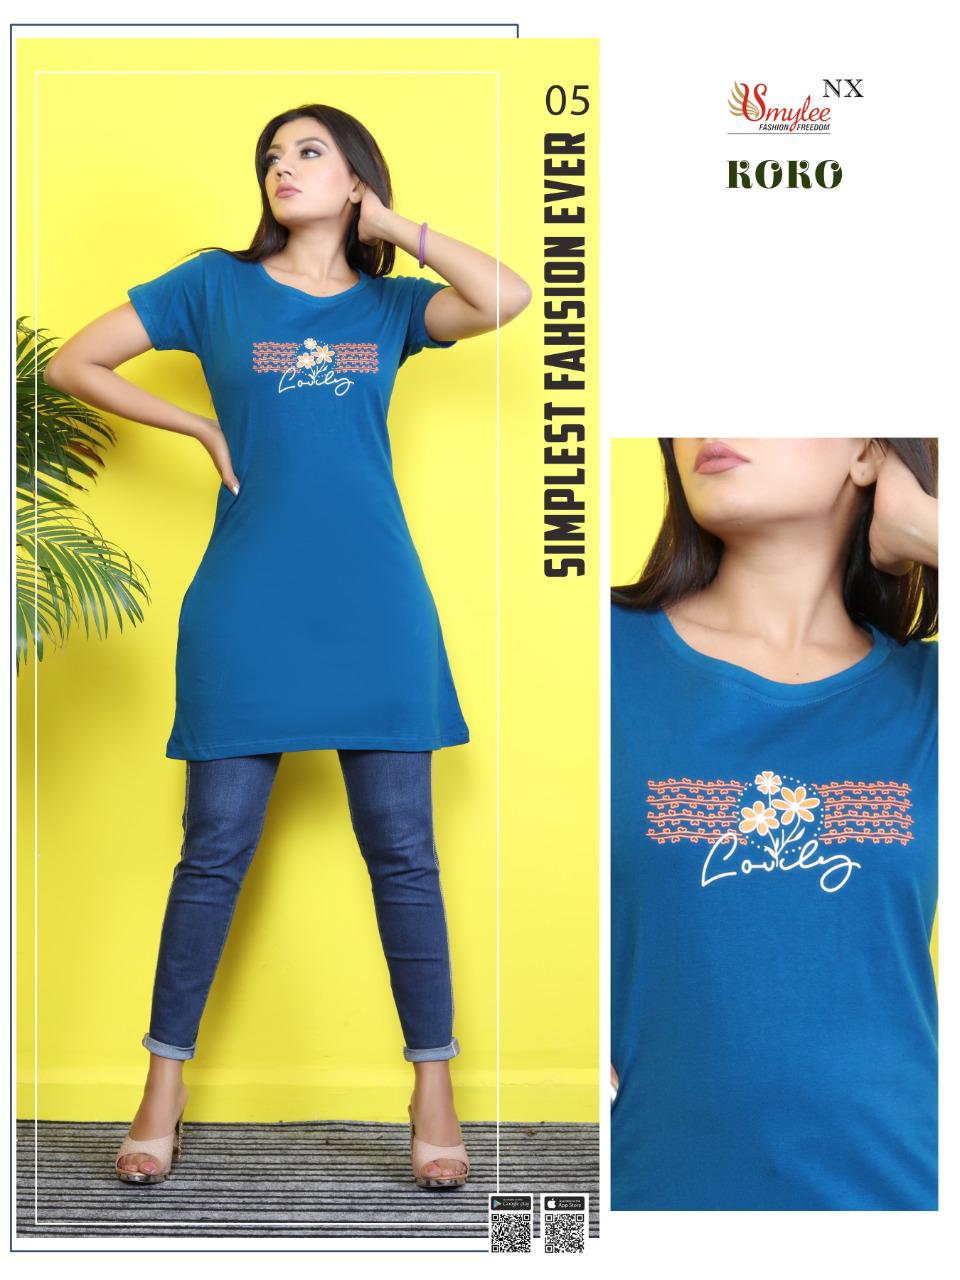 Smylee Koko Sinker Hosiery Night Wear Long T-shirt Catalog